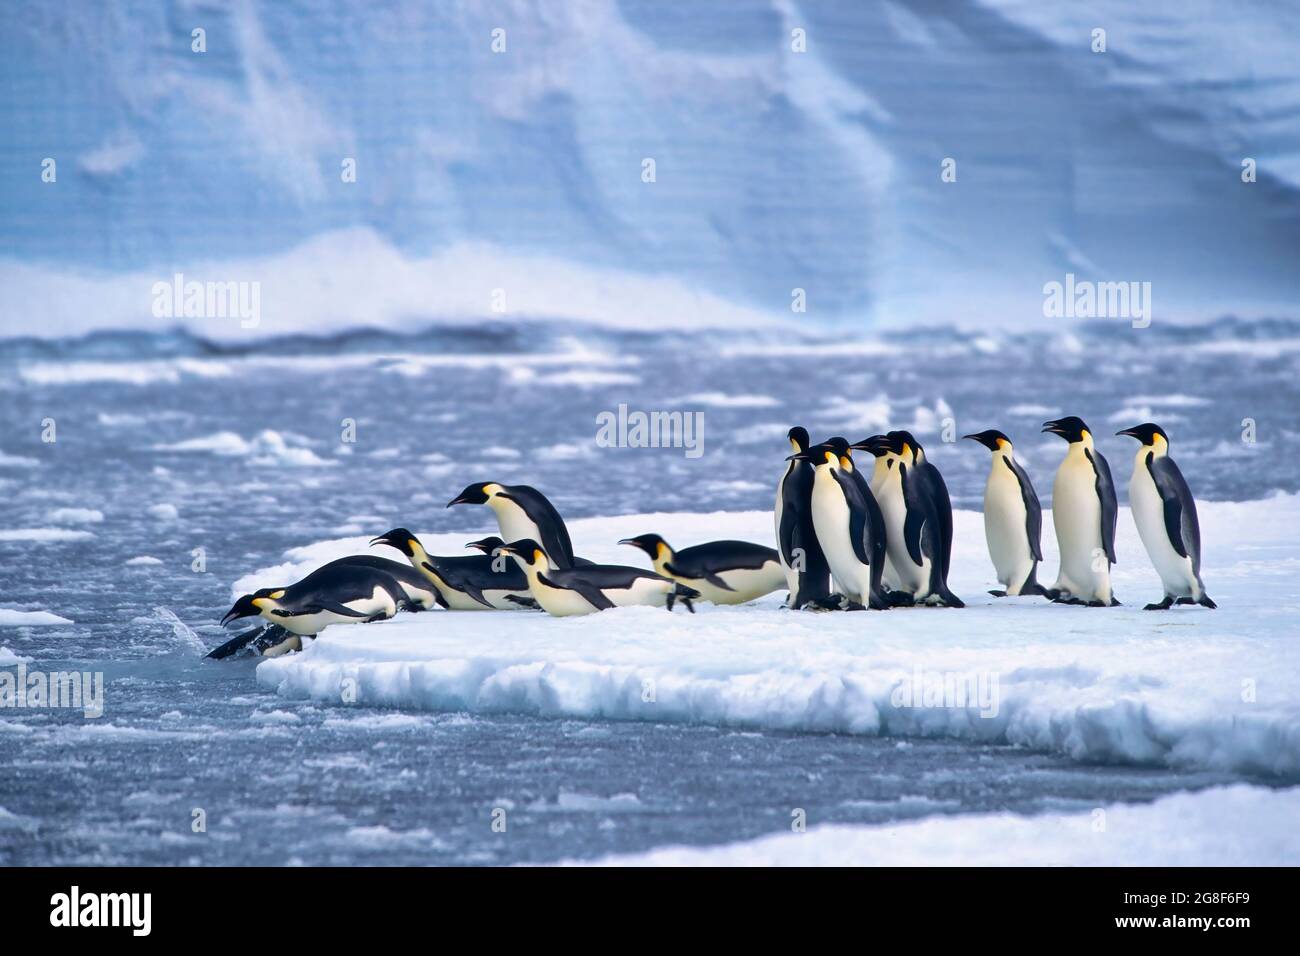 Pinguini imperatore (Aptenodytes forsteri) immersione in acqua vicino alla stazione tedesca Neumayer Antartico, Atka Bay, Weddell Sea, Antartide Foto Stock